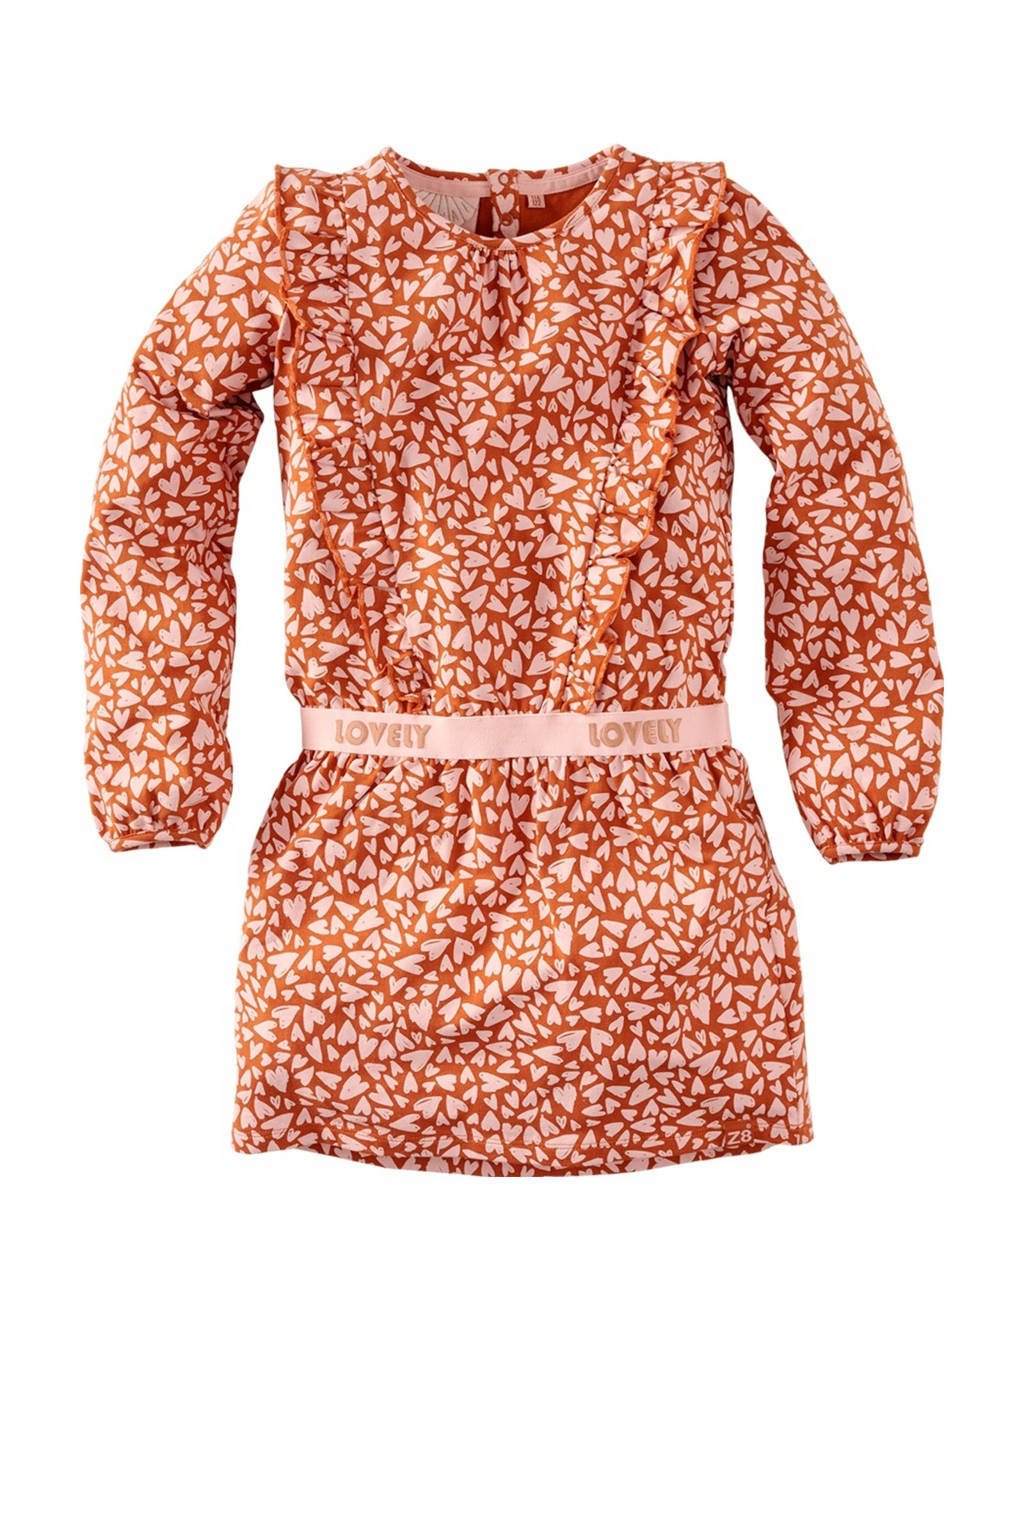 Z8 jurk Colien met all over print ruches bruin/lichtroze | wehkamp